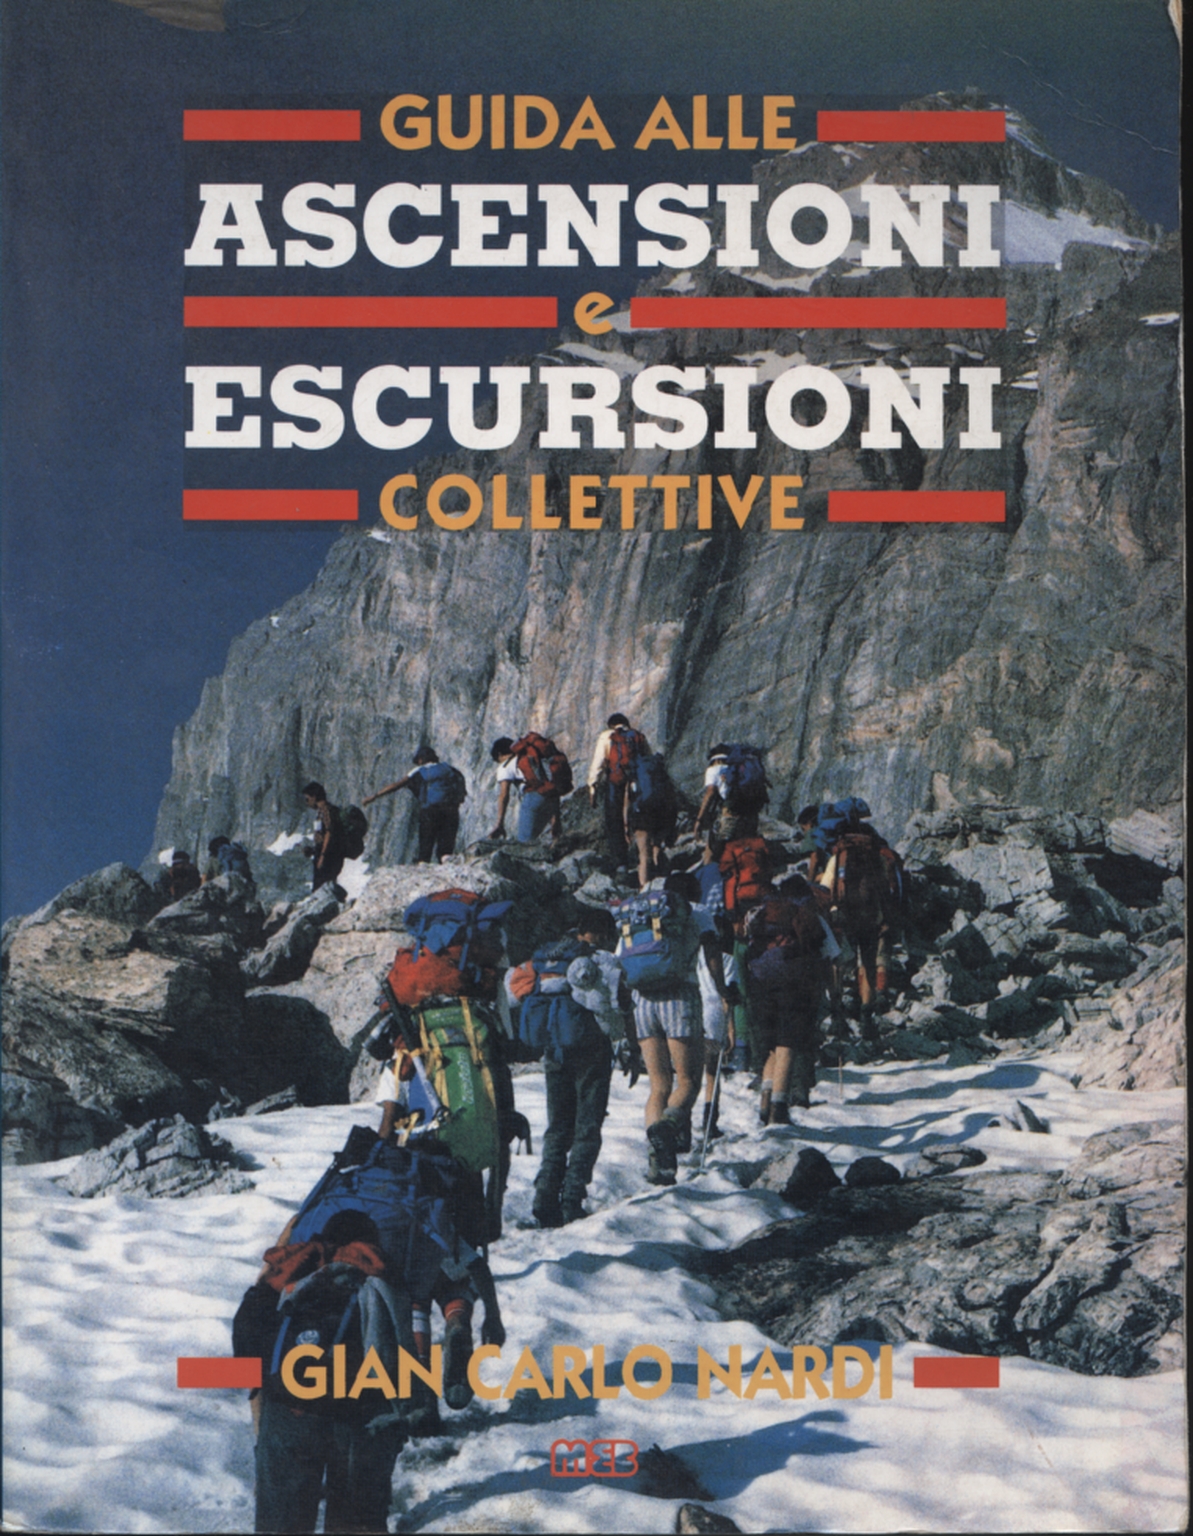 Guida alle ascensioni e escursioni collettive, Gian Carlo Nardi